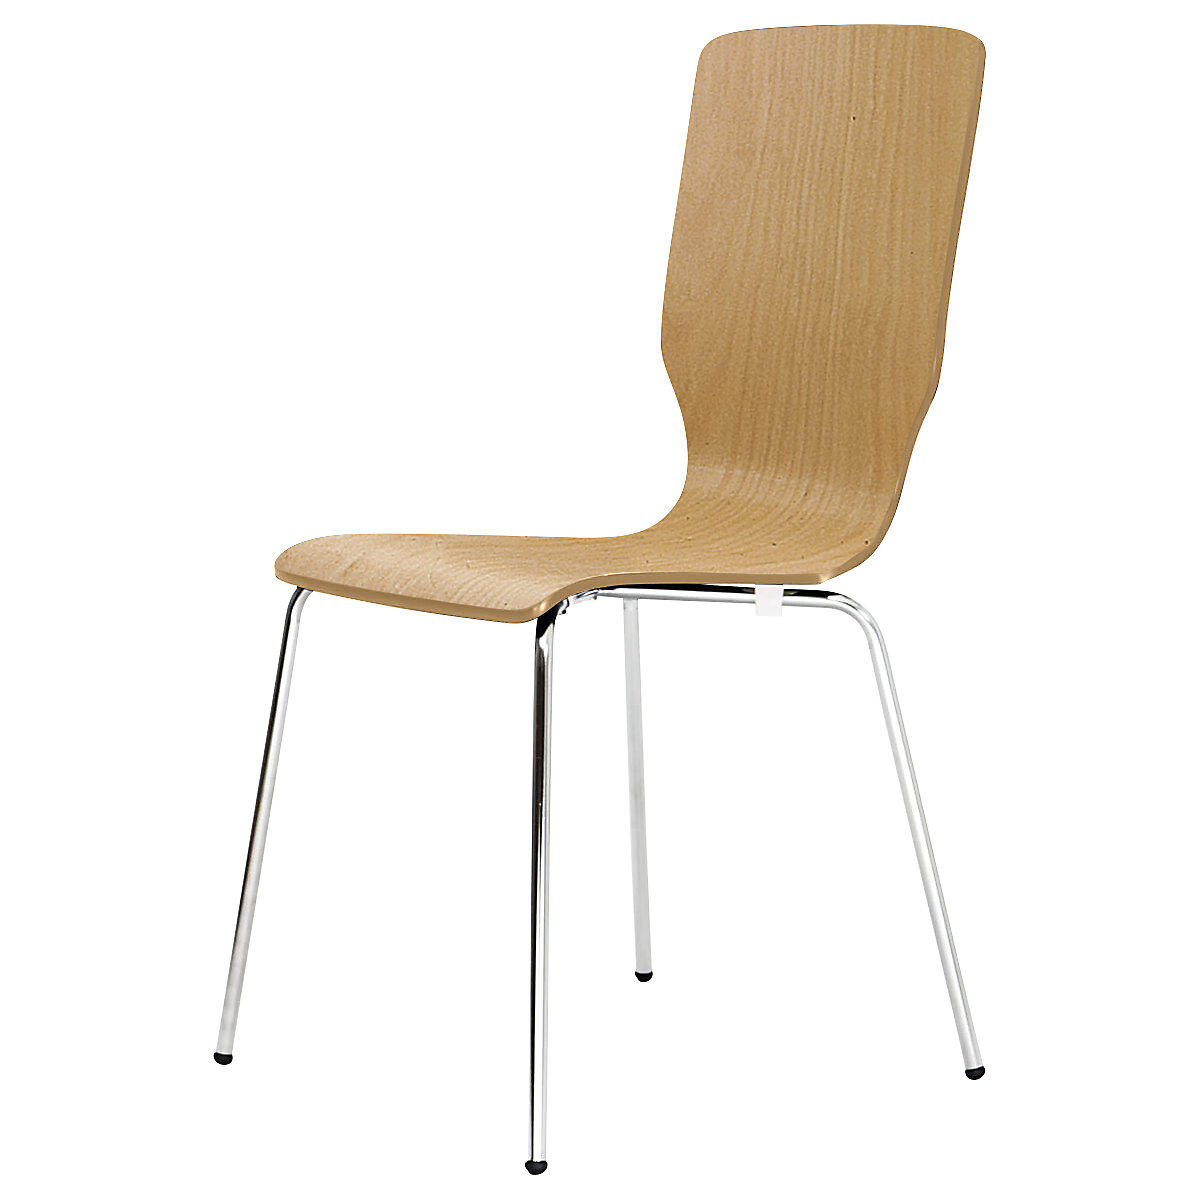 Cadeira de madeira em forma de concha, AxLxP 850 x 400 x 520 mm, embalagem de 4 unid., concha faia natural